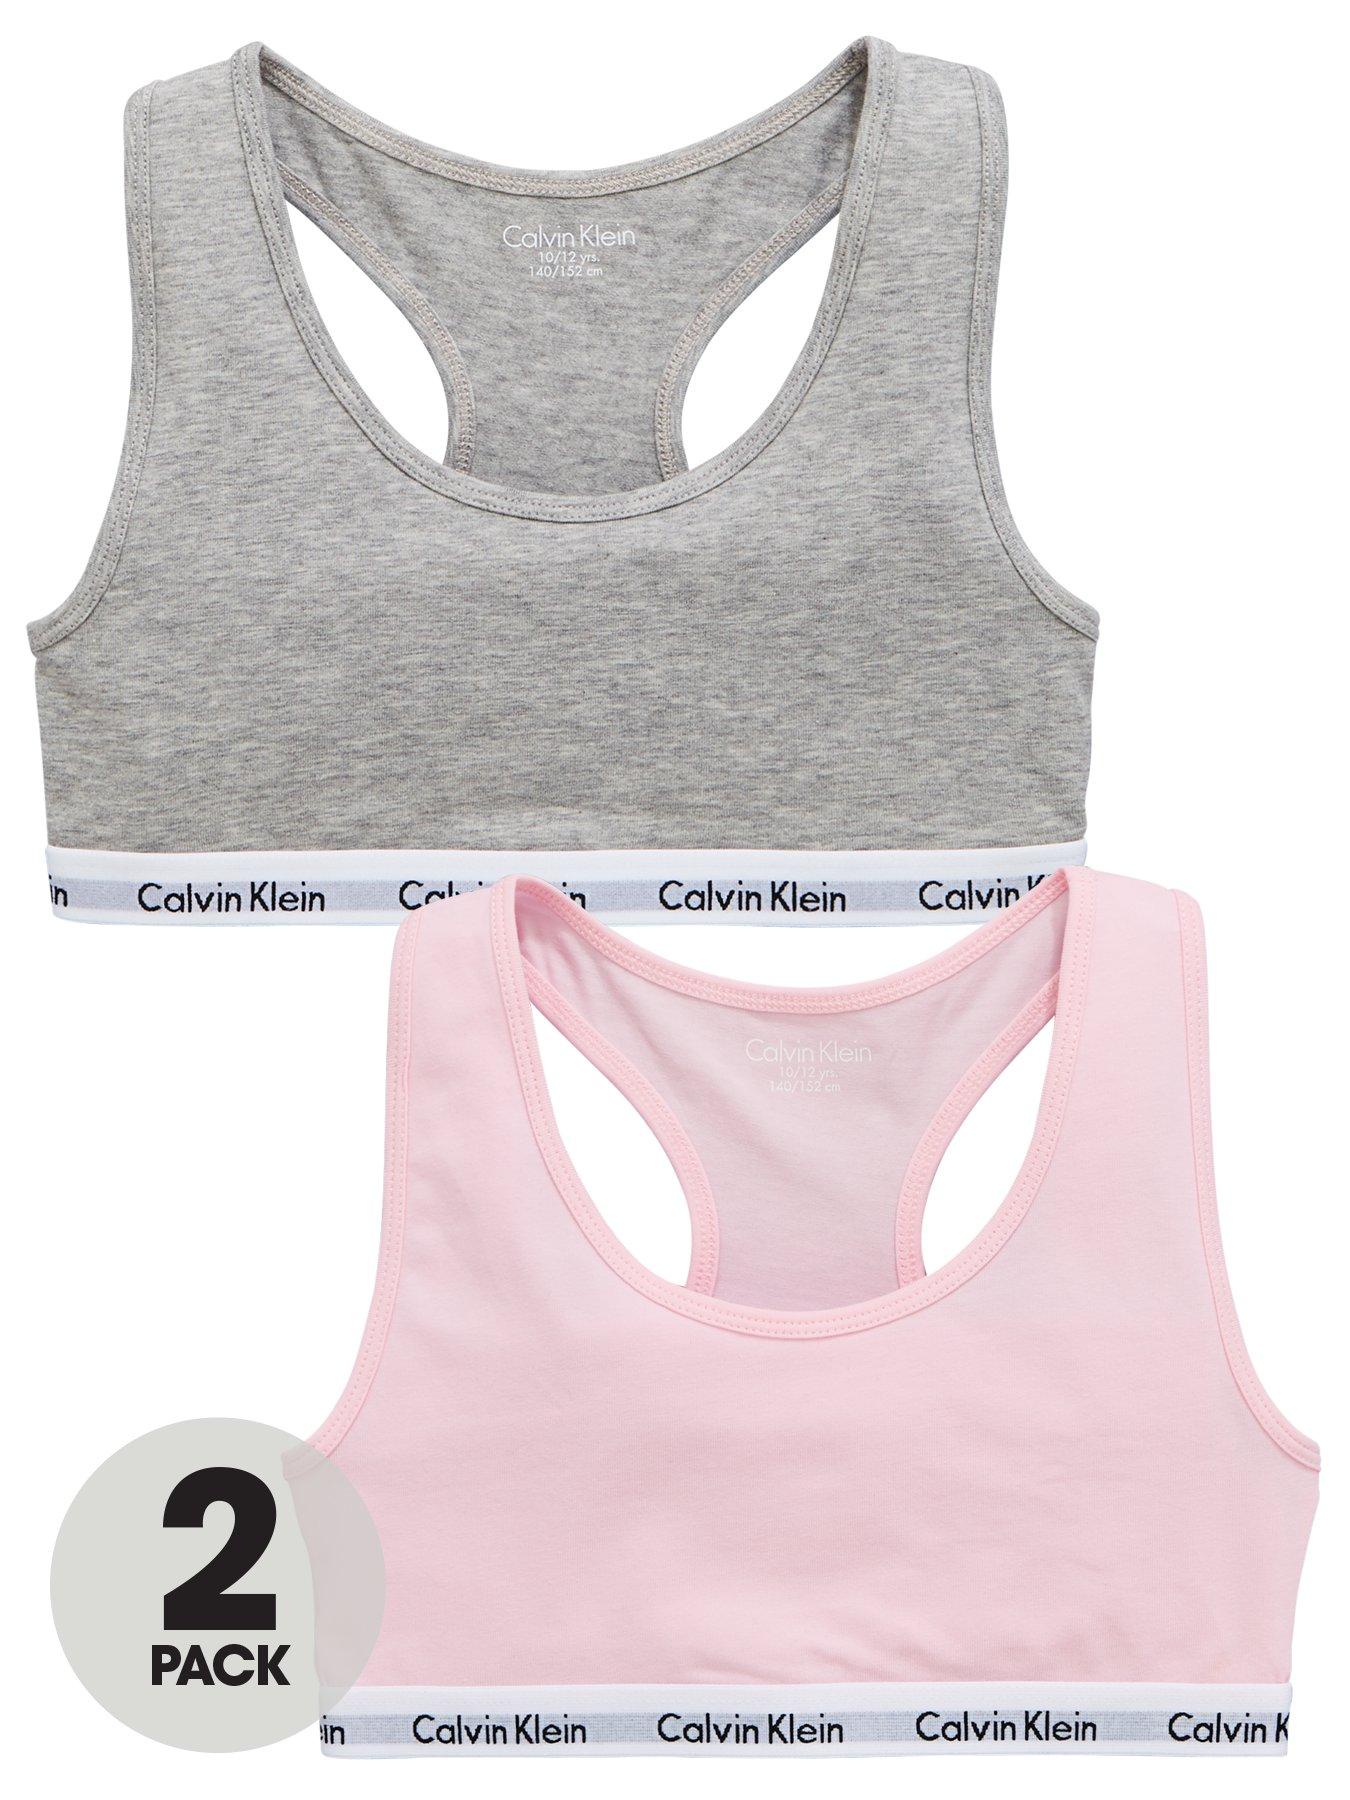 Calvin Klein Girls 2 Pack Bralettes - Grey/Pink